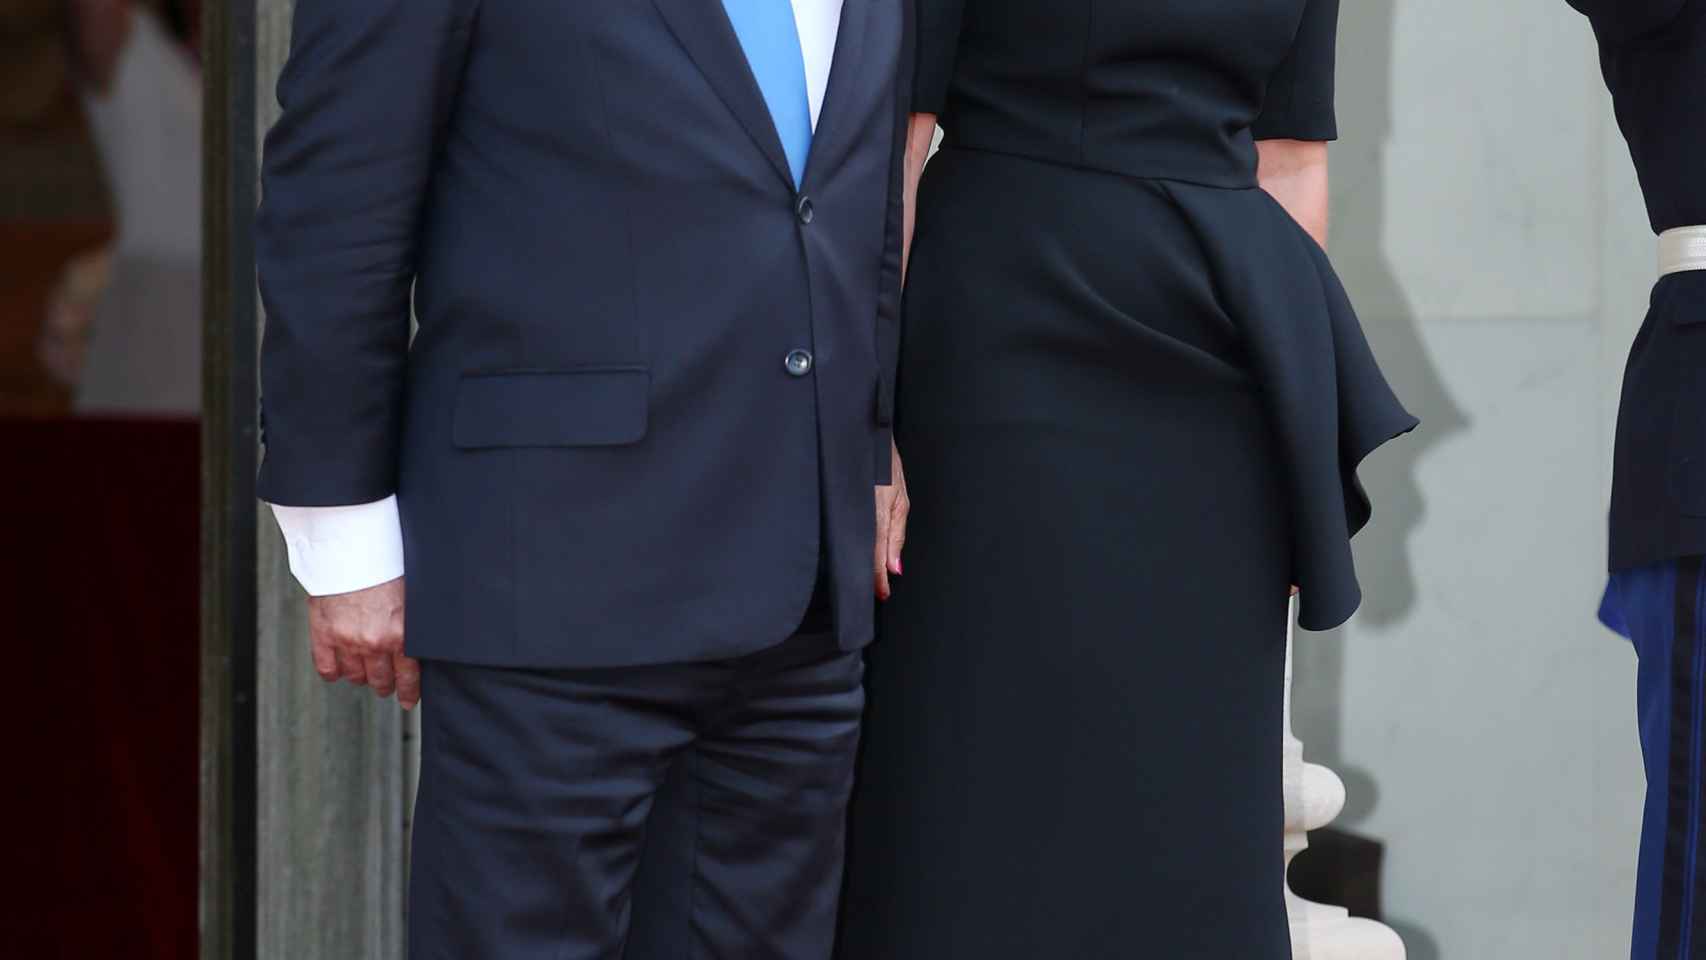 Hollande junto a Trierweiler, su pareja durante los primeros años en el Elíseo.